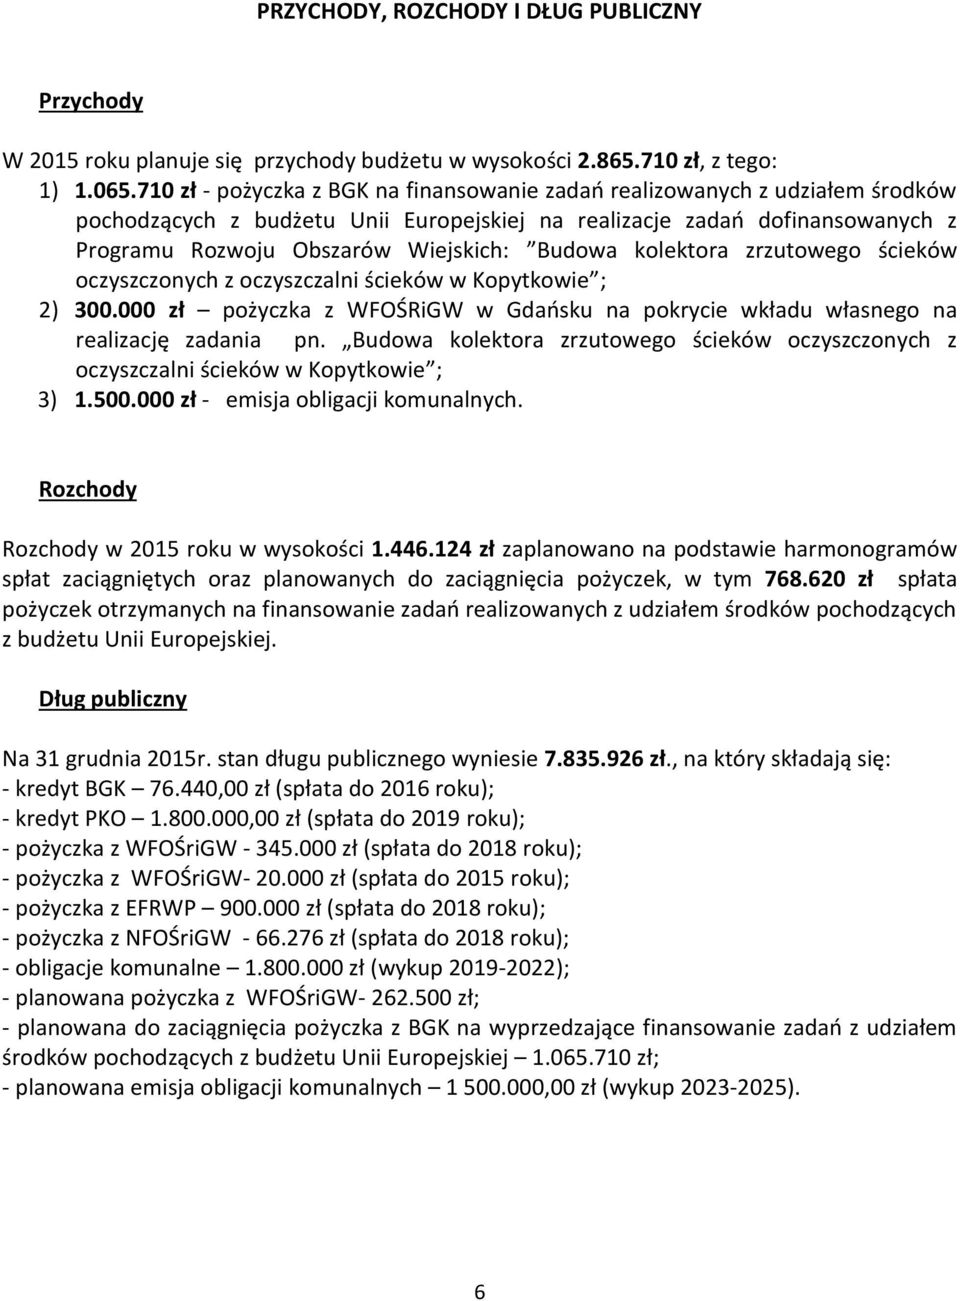 Budowa kolektora zrzutowego ścieków oczyszczonych z oczyszczalni ścieków w Kopytkowie ; 2) 300.000 zł pożyczka z WFOŚRiGW w Gdańsku na pokrycie wkładu własnego na realizację zadania pn.